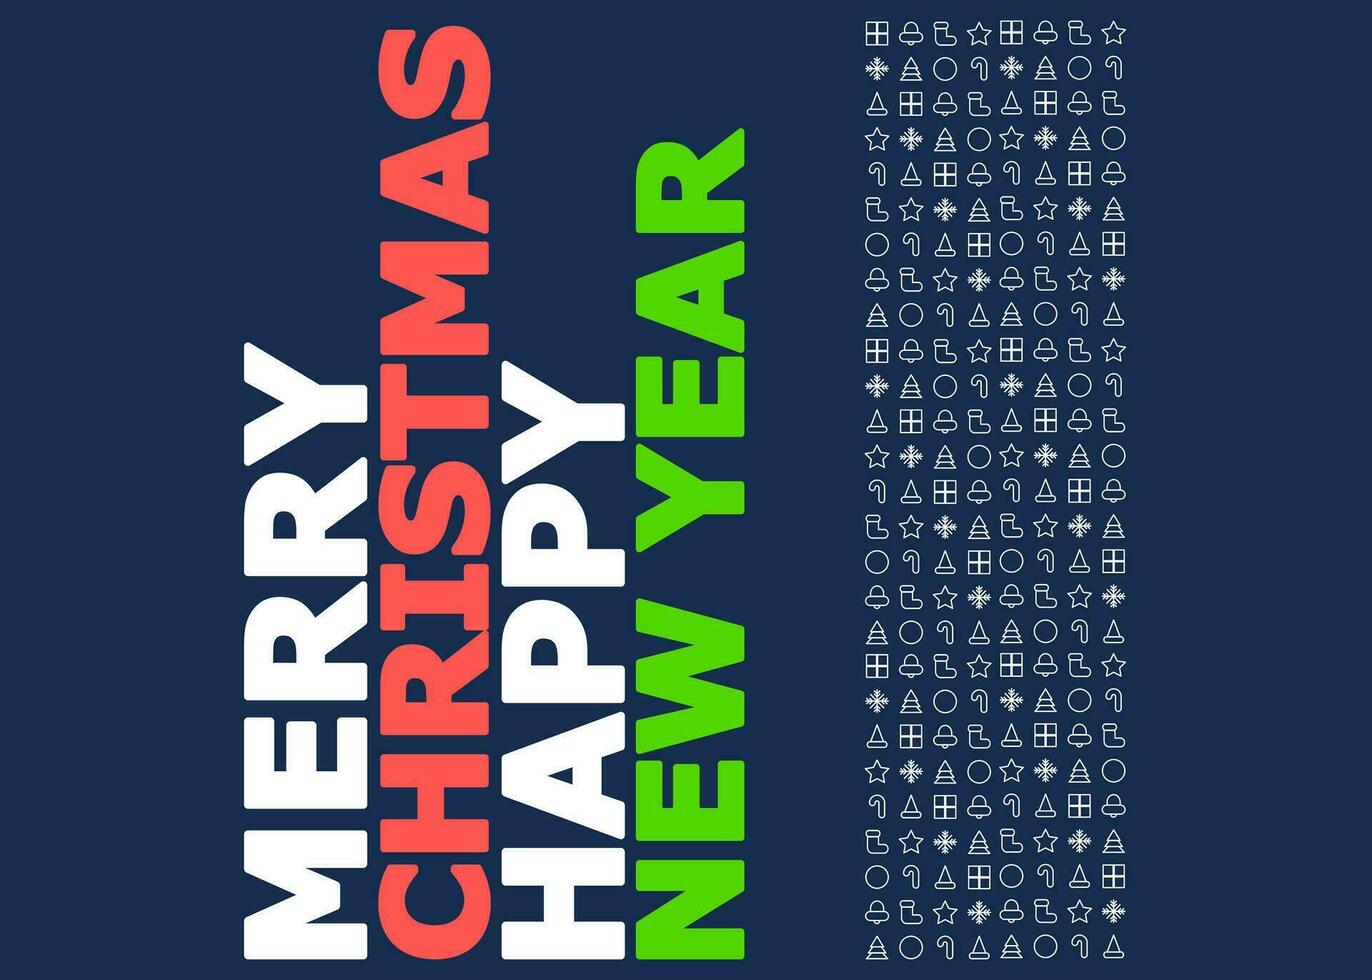 saludo tarjeta o enviar tarjeta o regalo tarjeta con alegre Navidad y contento nuevo año texto vector